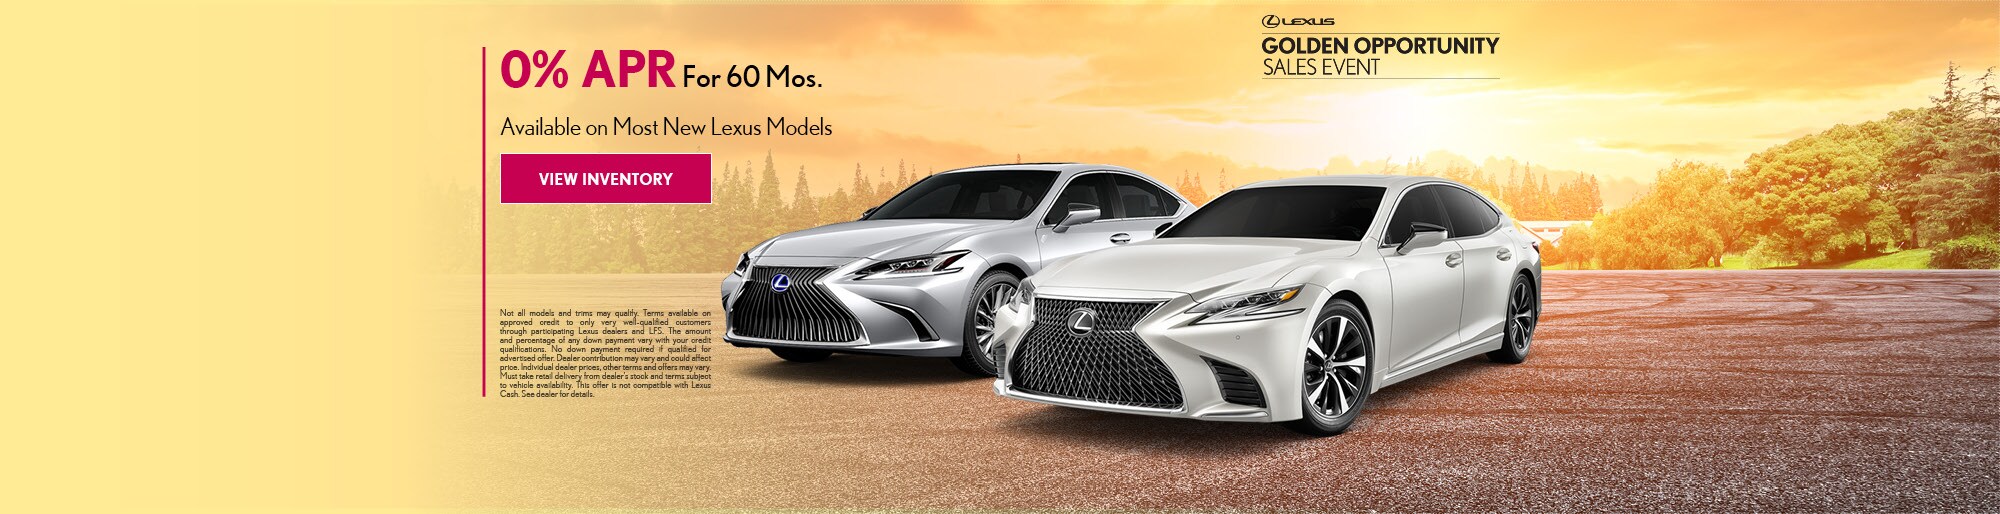 Lexus New Car Models 2020